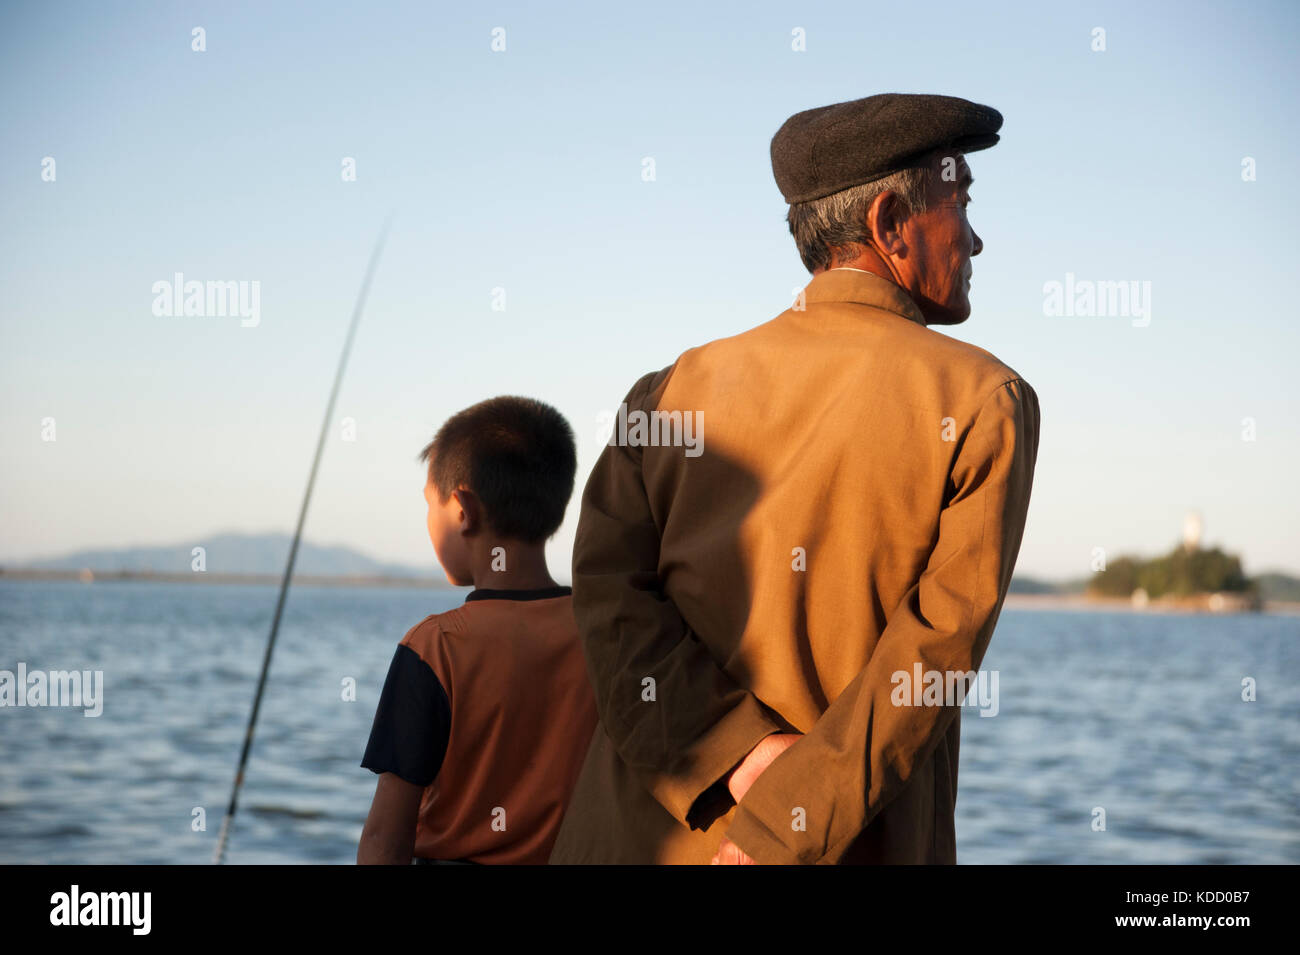 Les enfants sont toujours au rendez-vous lorsque les pêcheurs viennent en fin d'après Midi le long du Port de Wonsan. Wonsan se trouve au Bord de la m Stockfoto